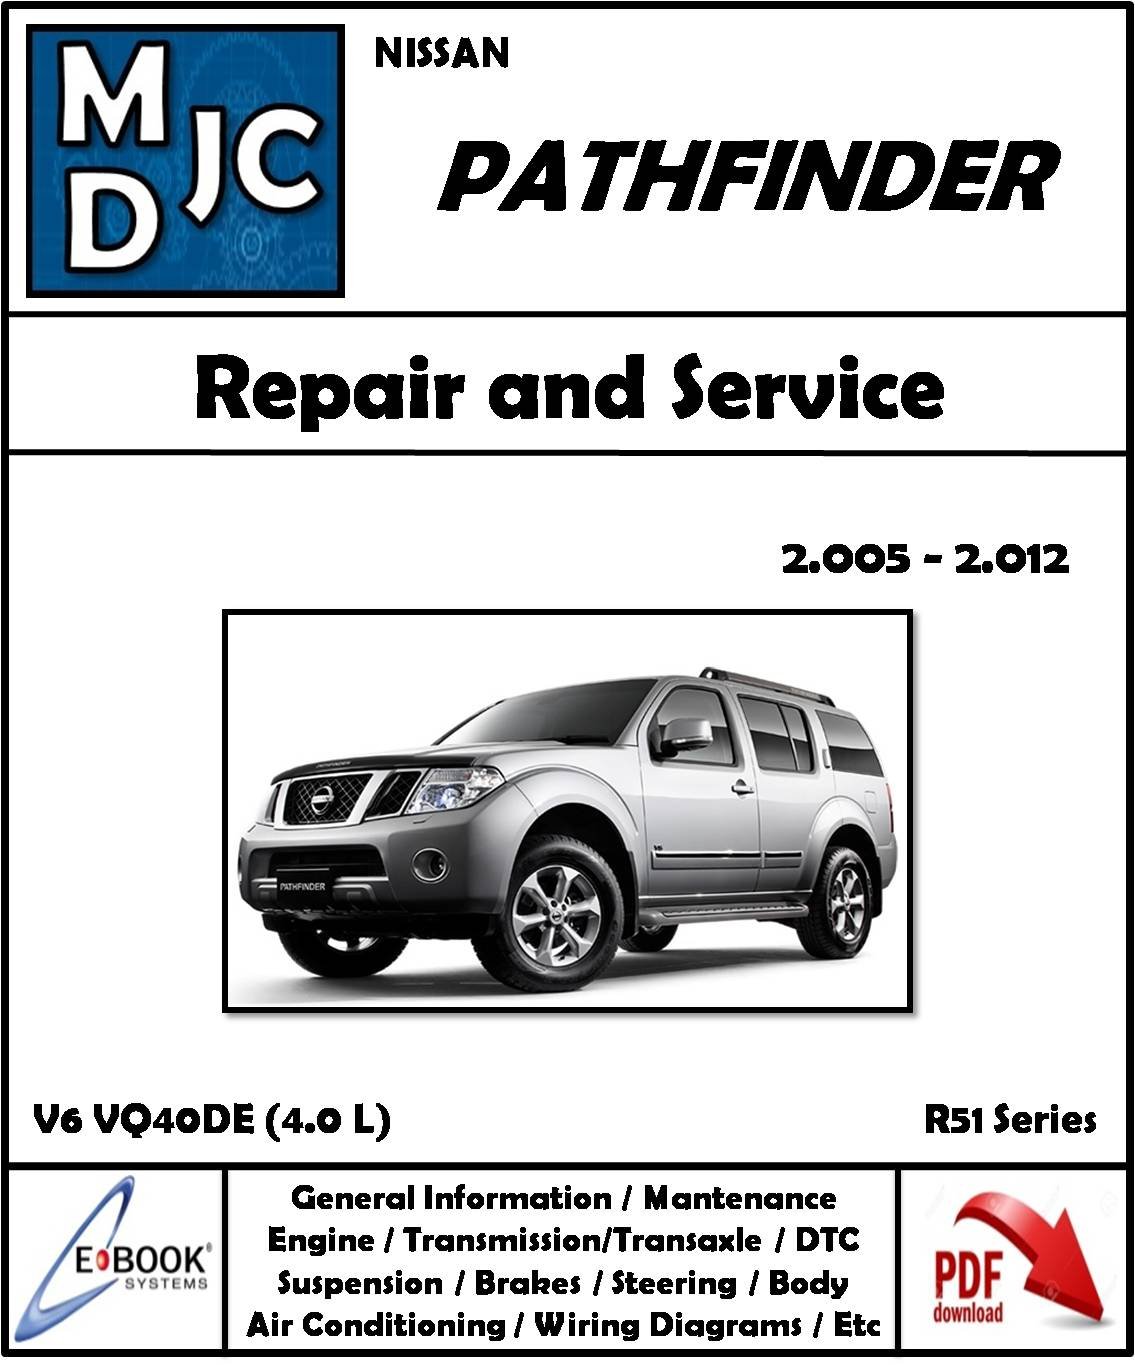 Nissan Pathfinder 2005 - 2012